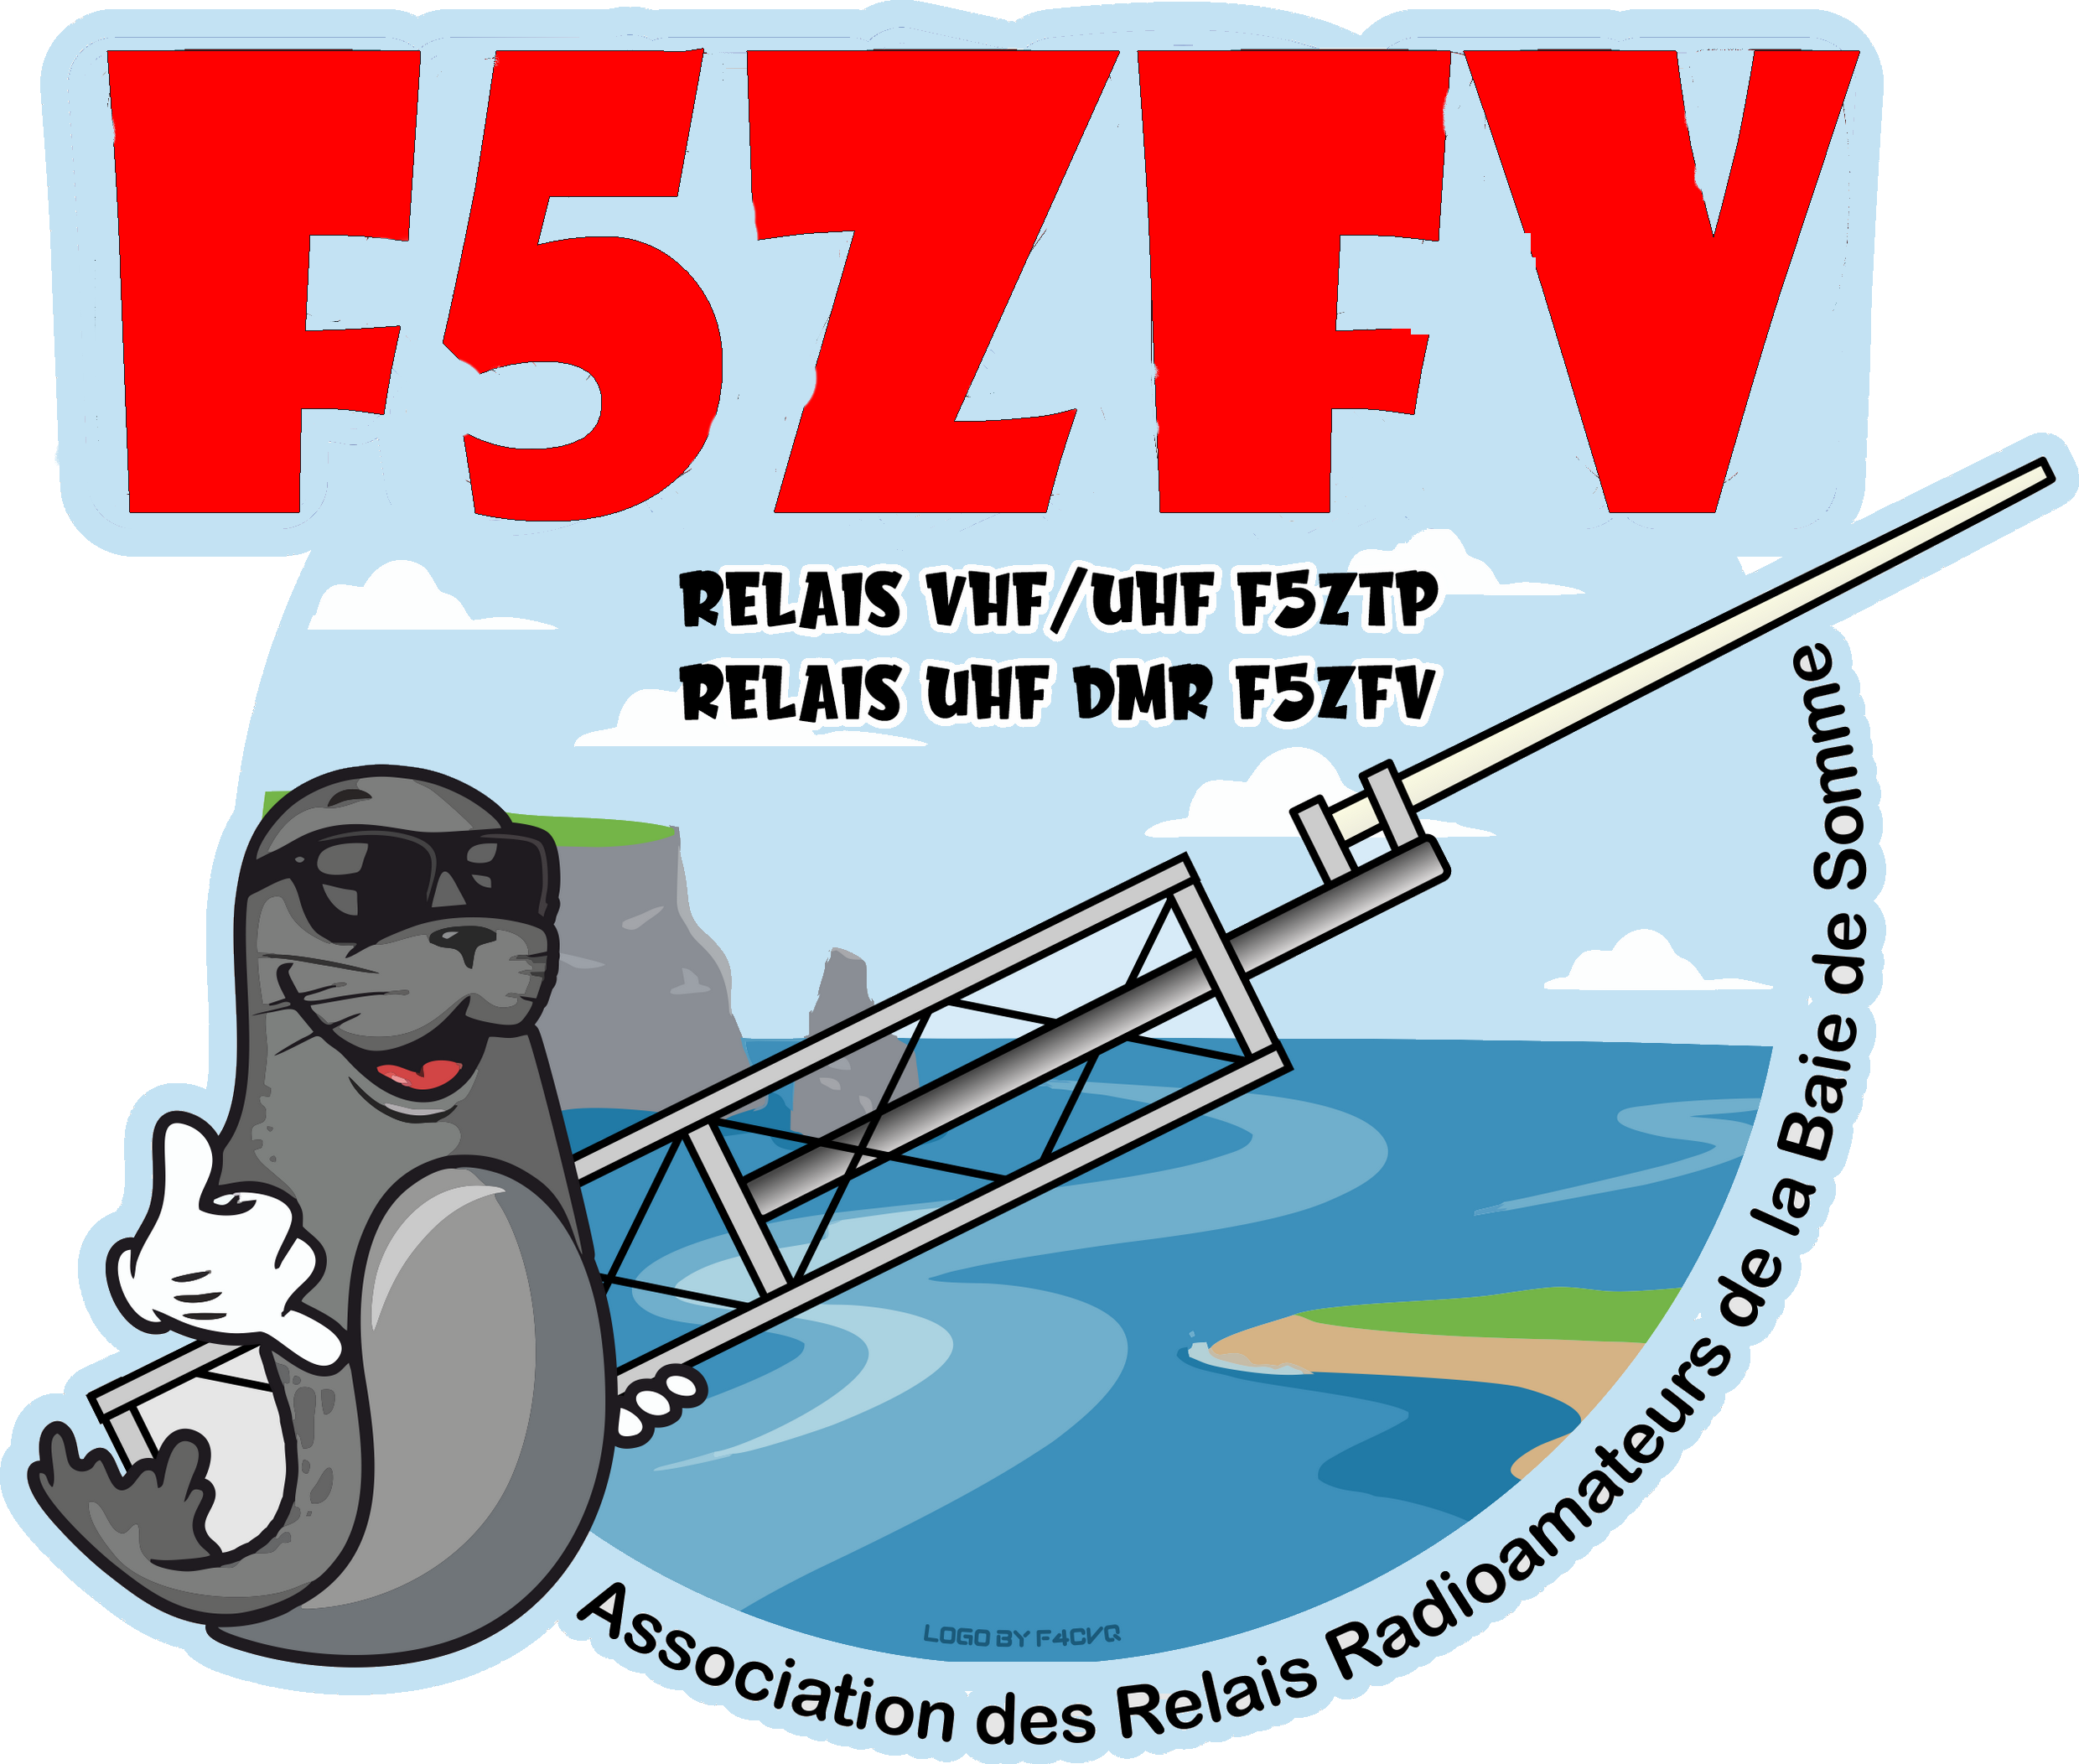 F5zfv-baie